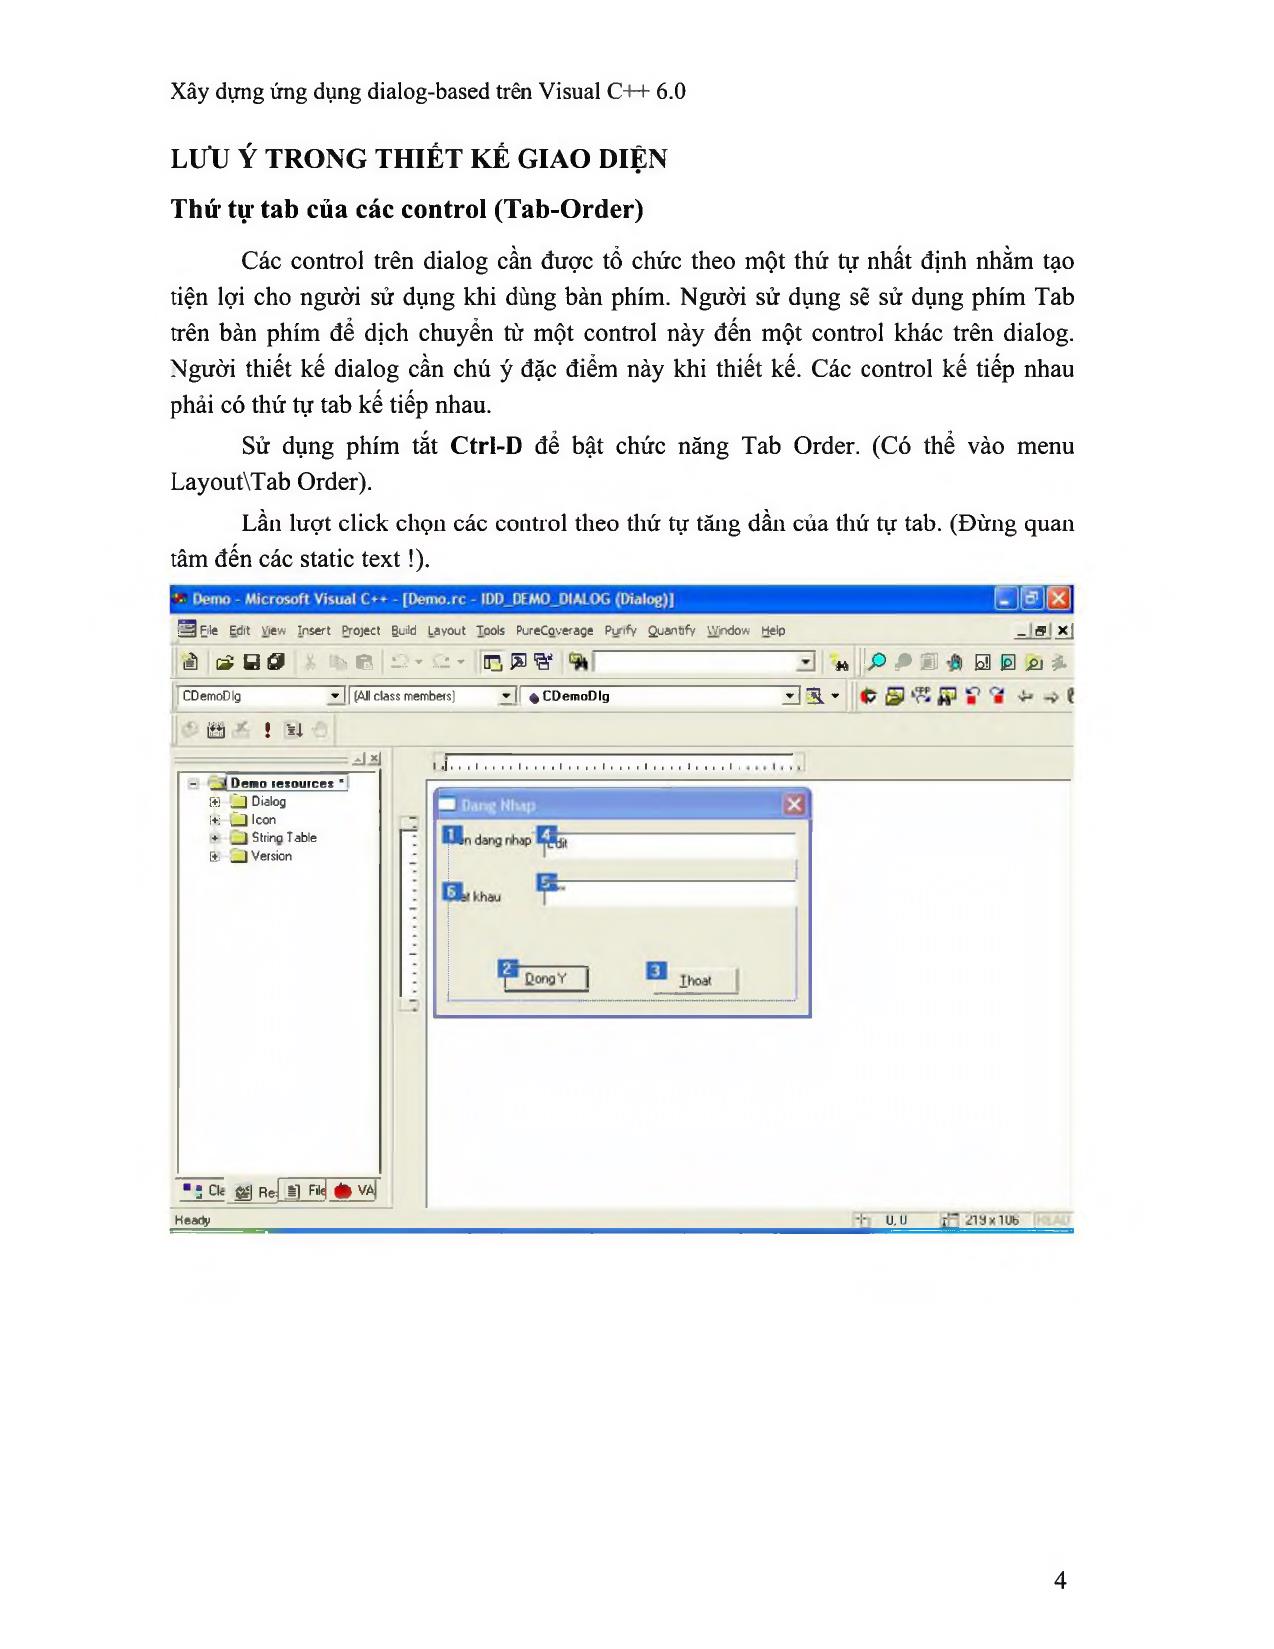 Xây dựng ứng dụng dialog-Based trên Visual C++ 6.0 trang 4